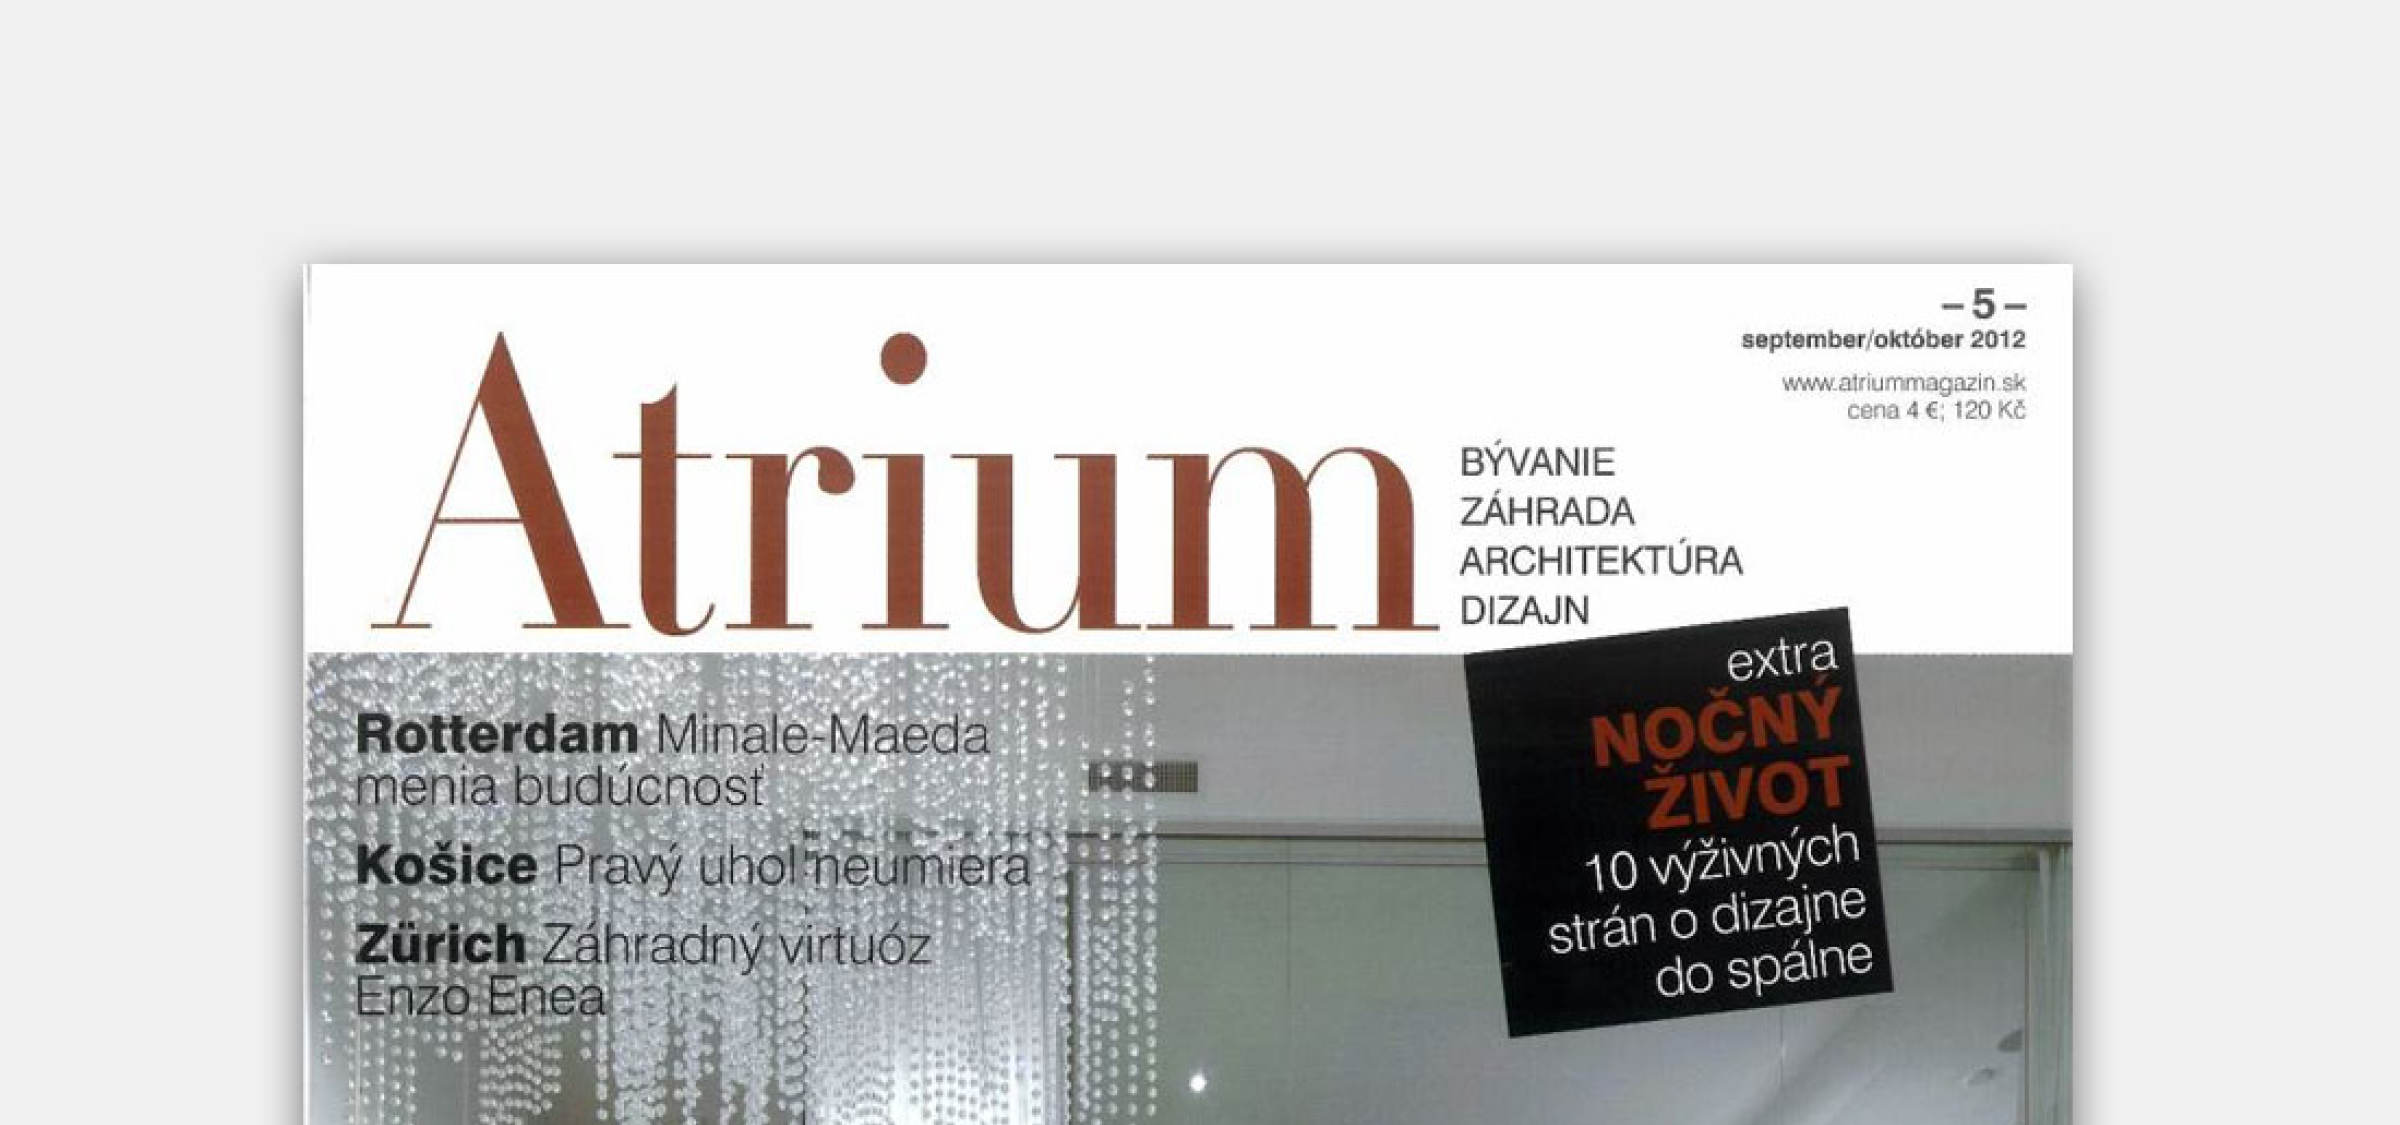 Vila P in new issue of Atrium magazine | News | Atrium Architekti